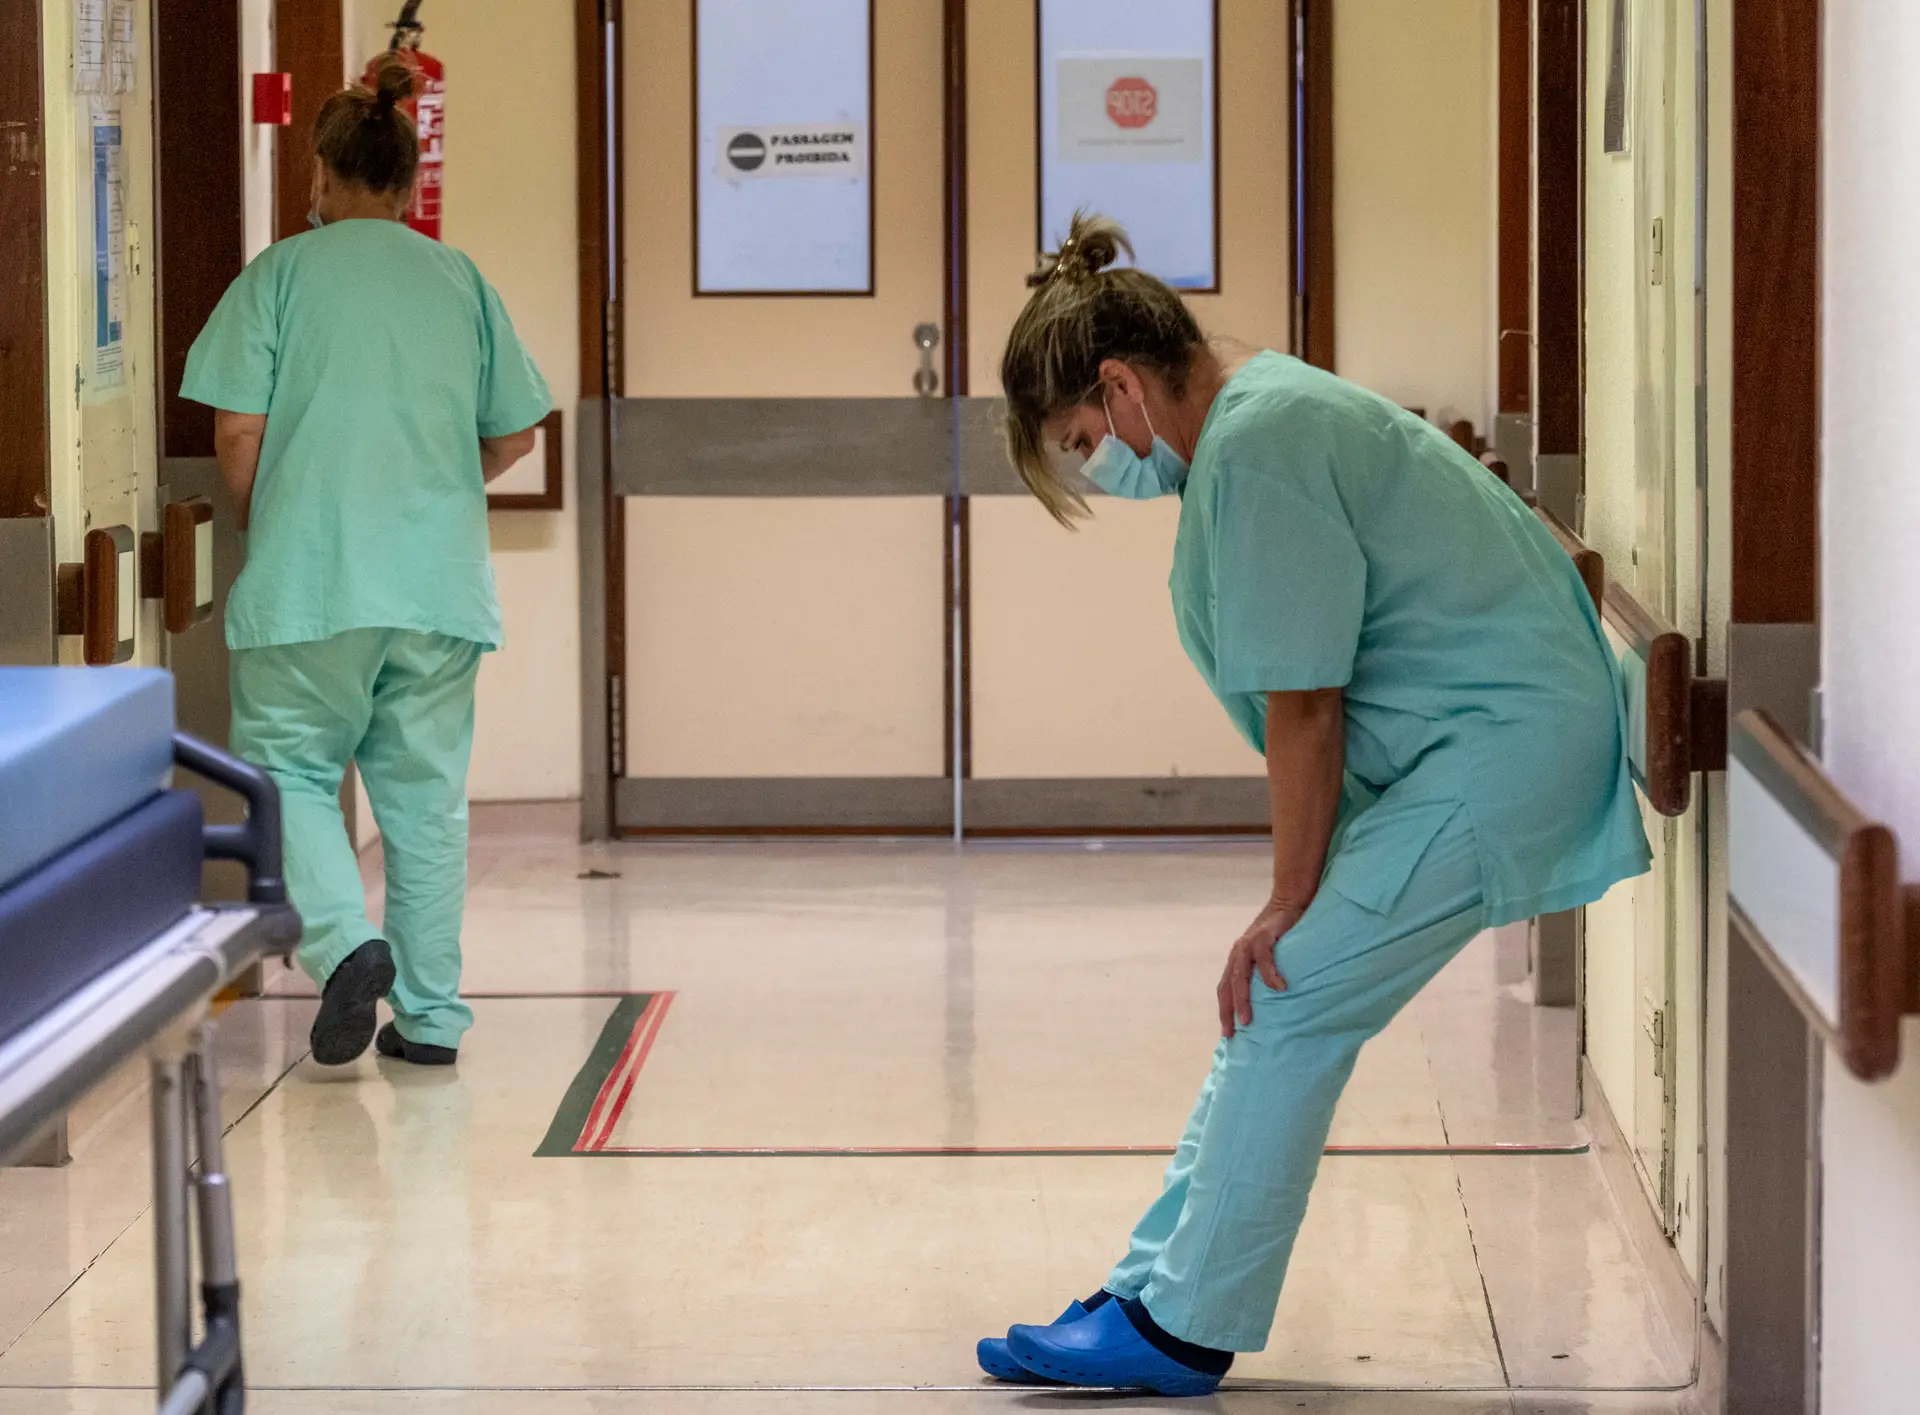 Mais de 6500 enfermeiros já pediram escusa de responsabilidade por degradação dos serviços de saúde prestados, avança Ordem